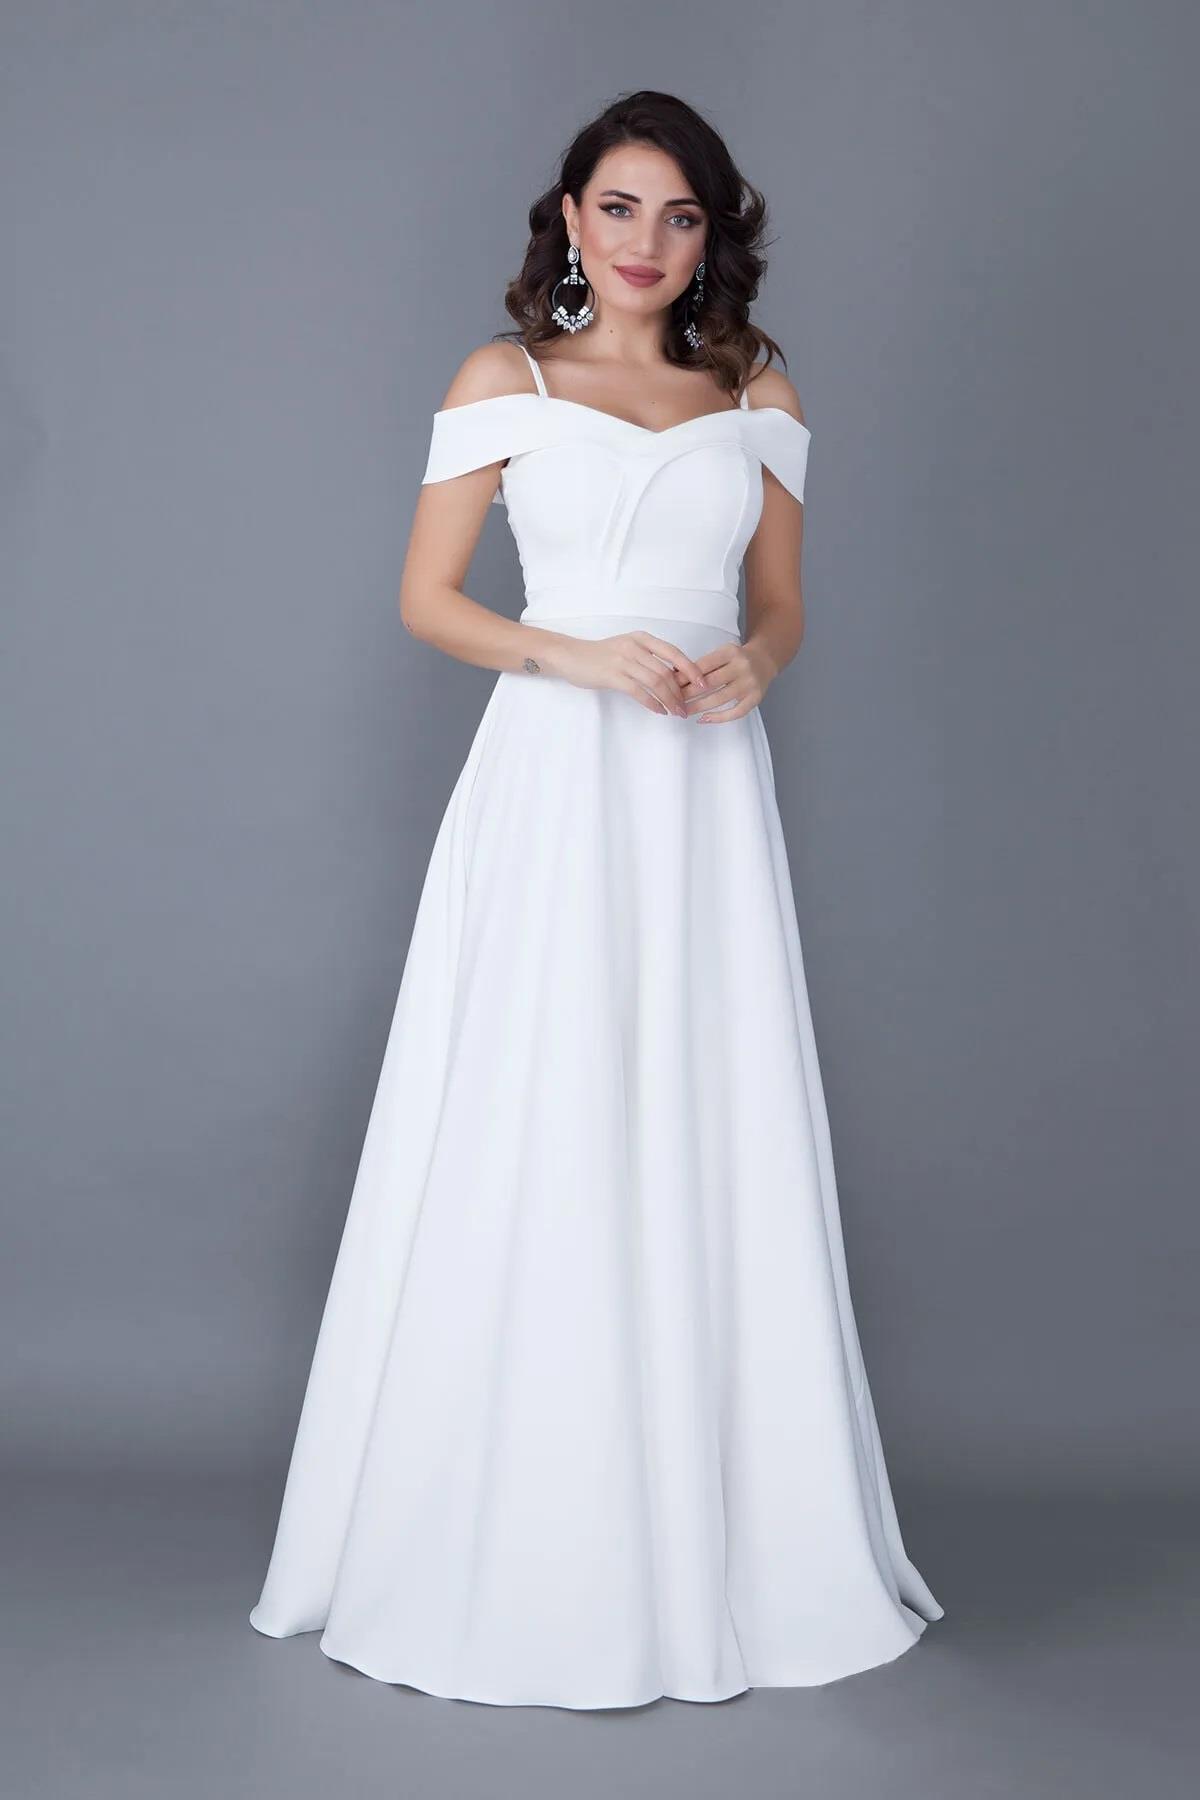 Kadın Askılı Düşük Omuz Detay Maxi Boy Beyaz Abiye Elbise 342